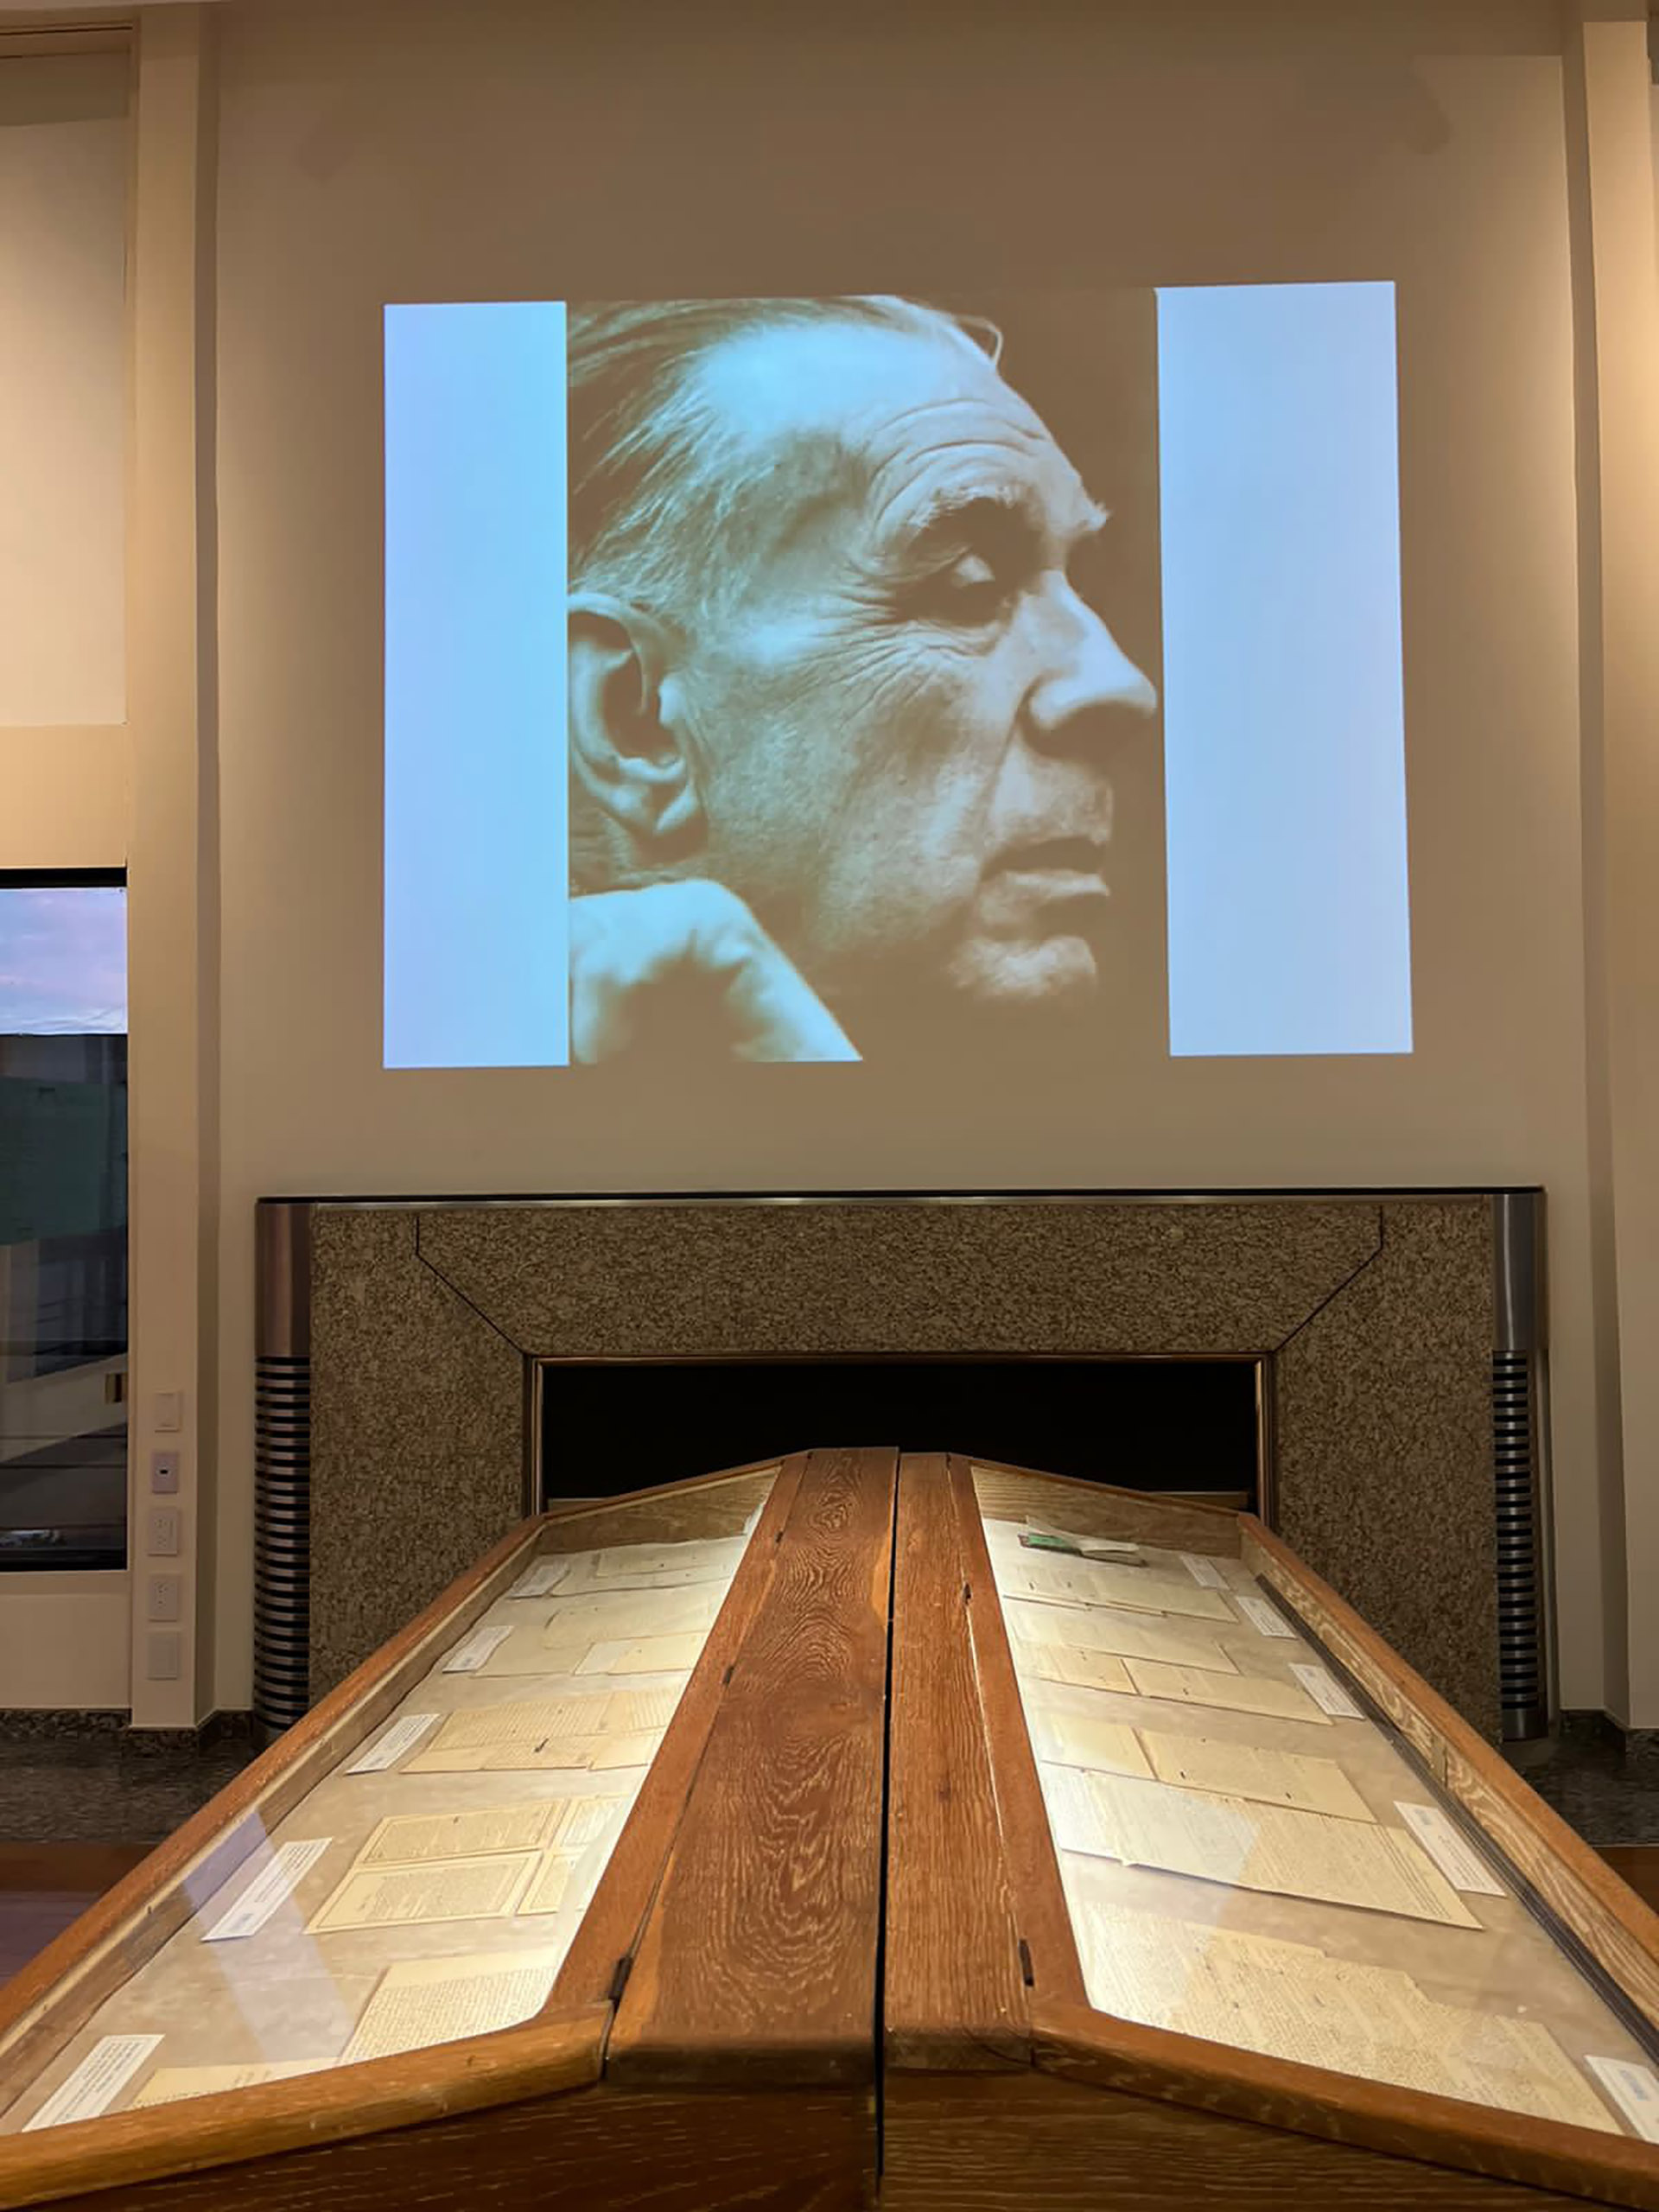 La muestra "Borges. Años de esplendor literario" puede verse en la ciudad de Rosario